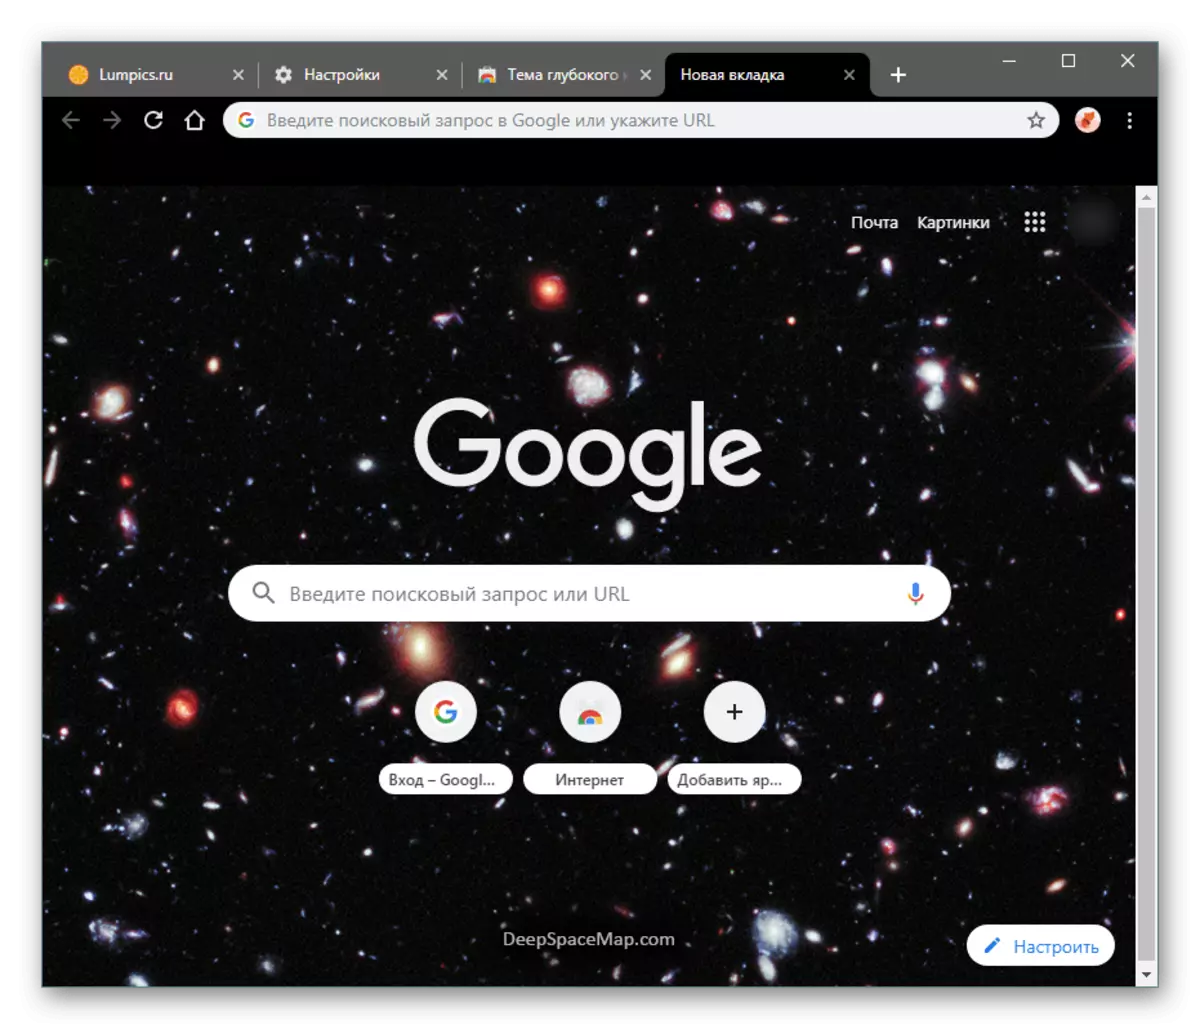 Google Chromeдеги Жаңы өтмөктөгү баштапкы фондук темалар